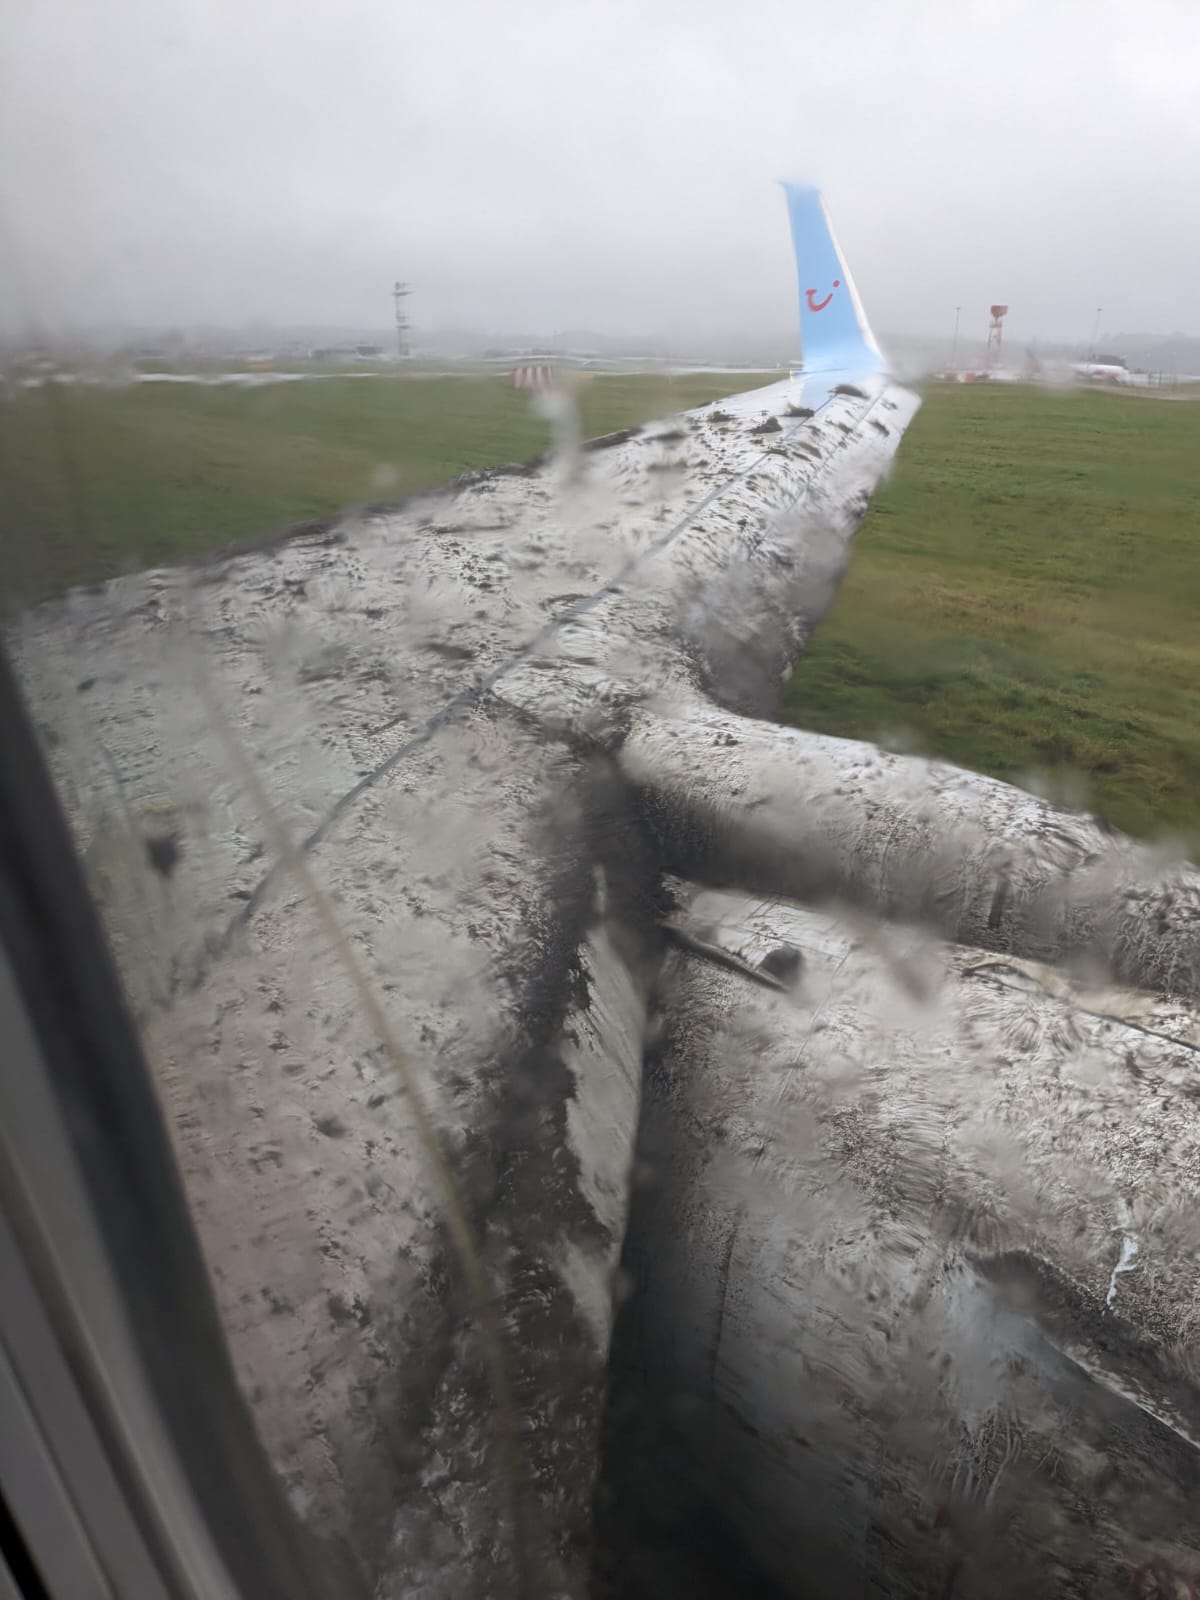 Die Boeing 737-800 pflügte in den sumpfigen Randstreifen und bespritzte die Tragflächen mit Schlamm